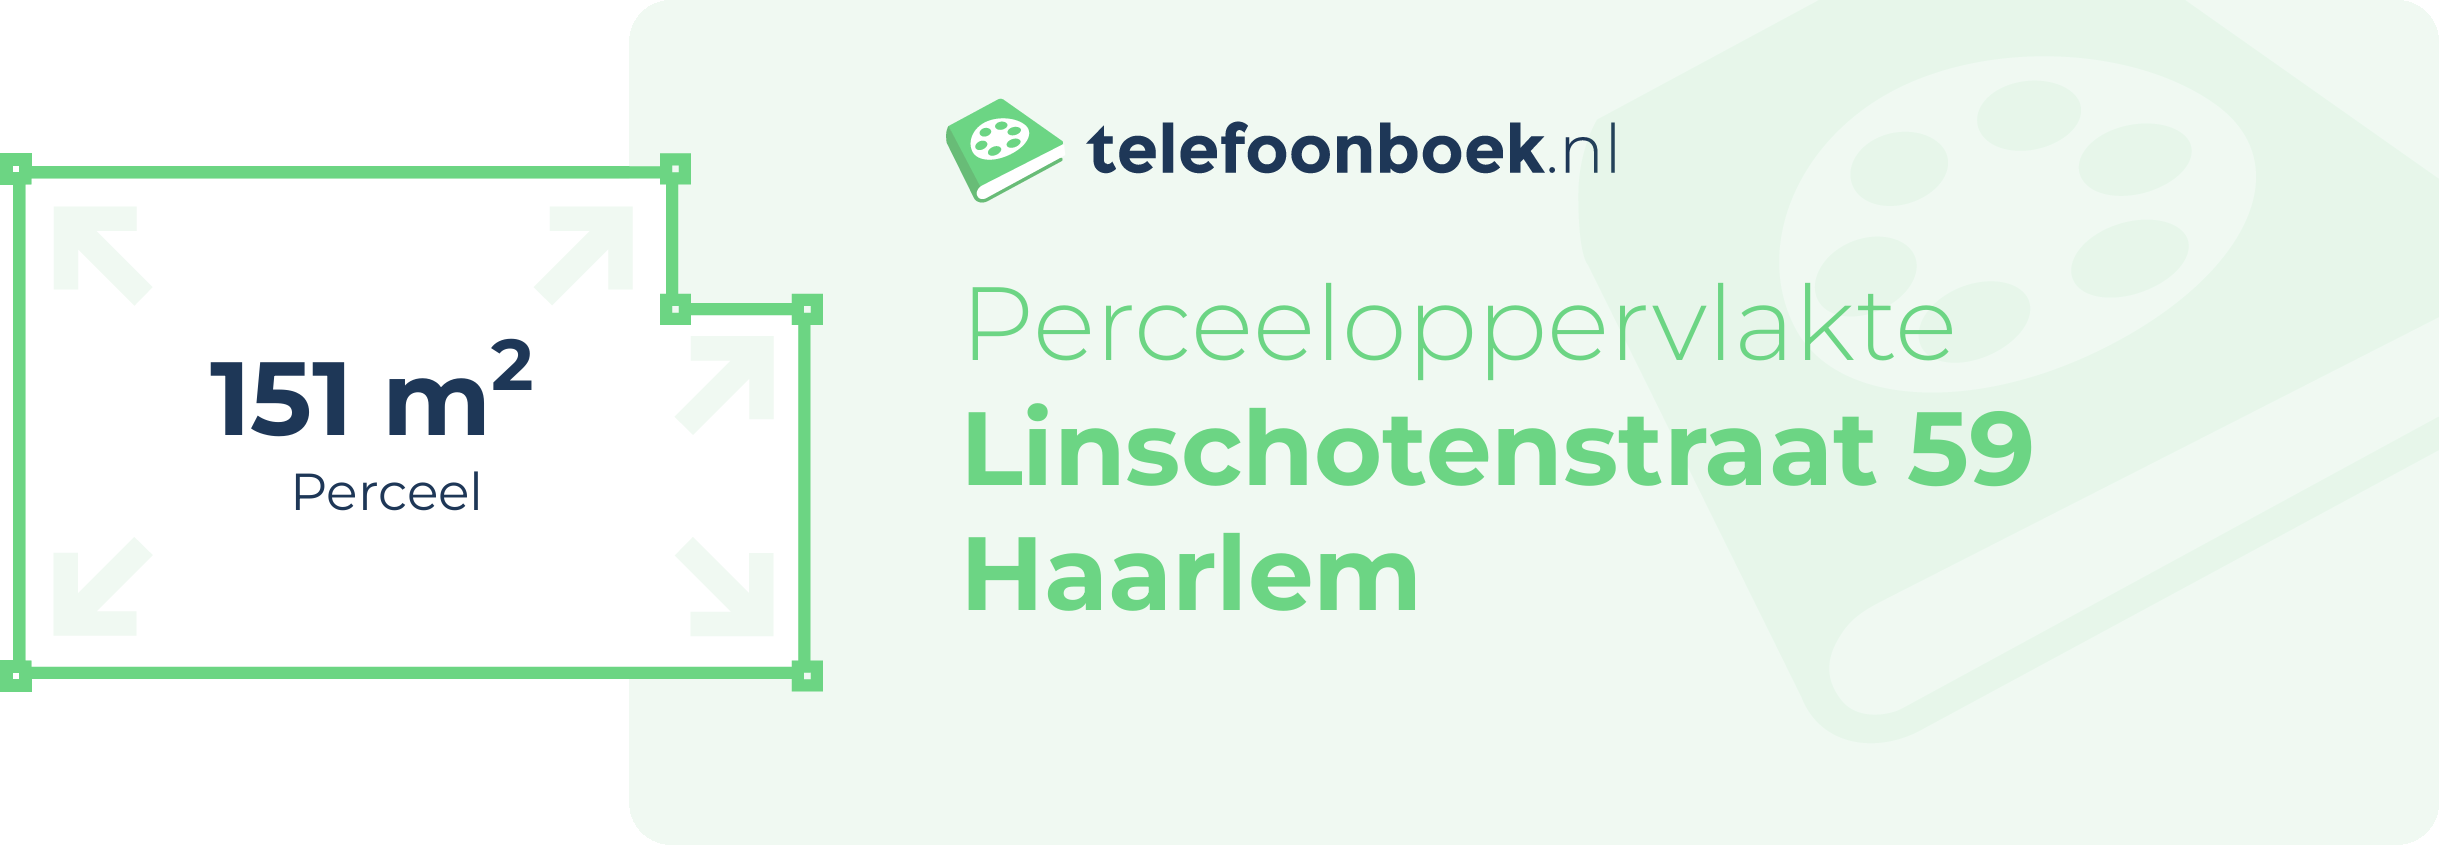 Perceeloppervlakte Linschotenstraat 59 Haarlem